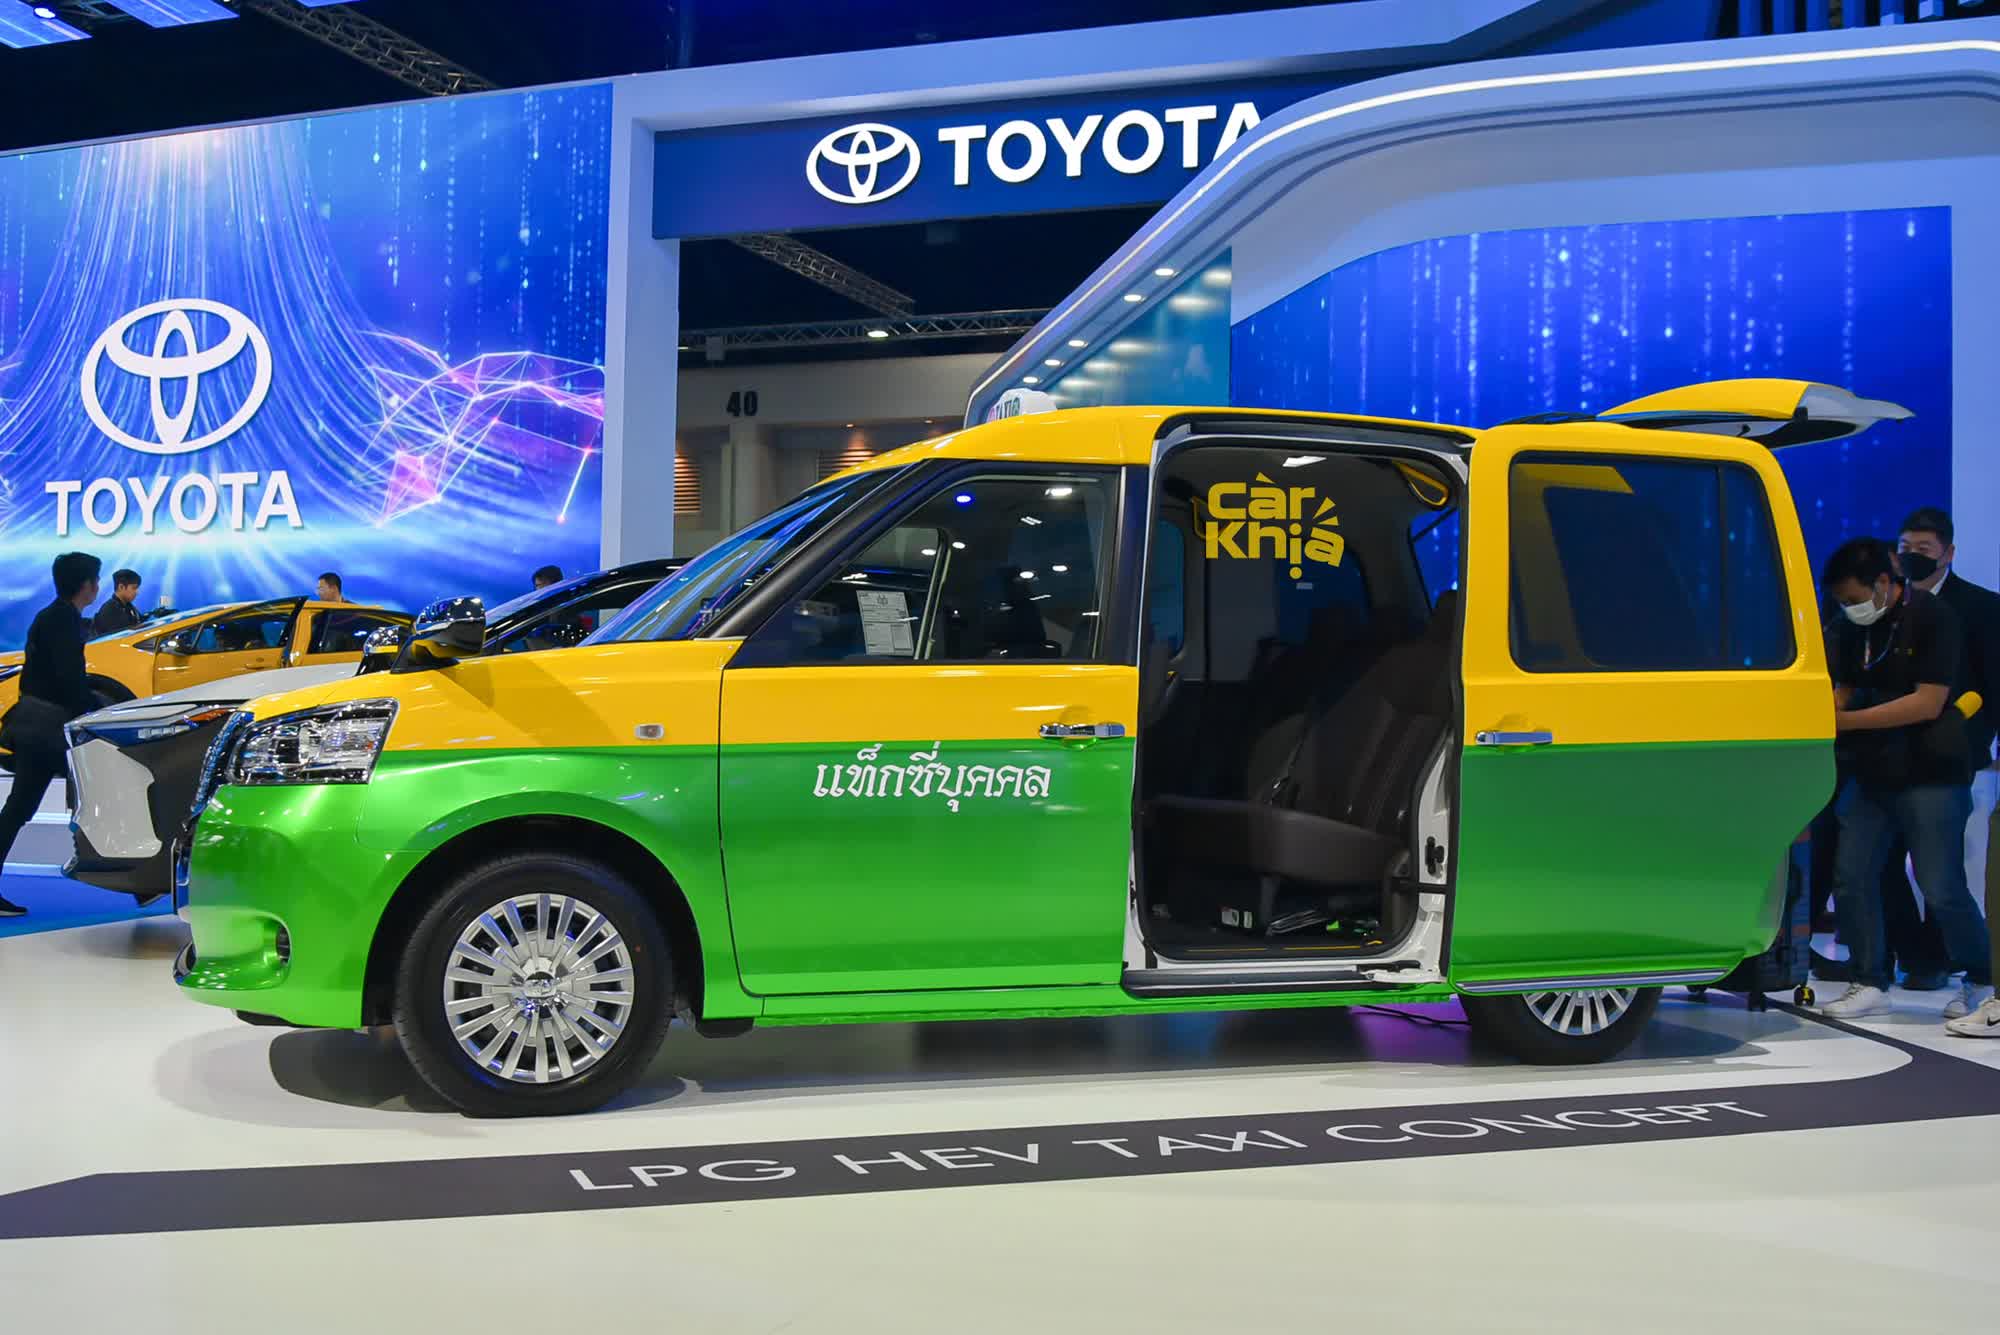 Đây mới là chiếc Toyota taxi thực dụng đến kinh dị, công nghệ an toàn như Camry nhưng không có nổi màn hình giải trí - Ảnh 5.